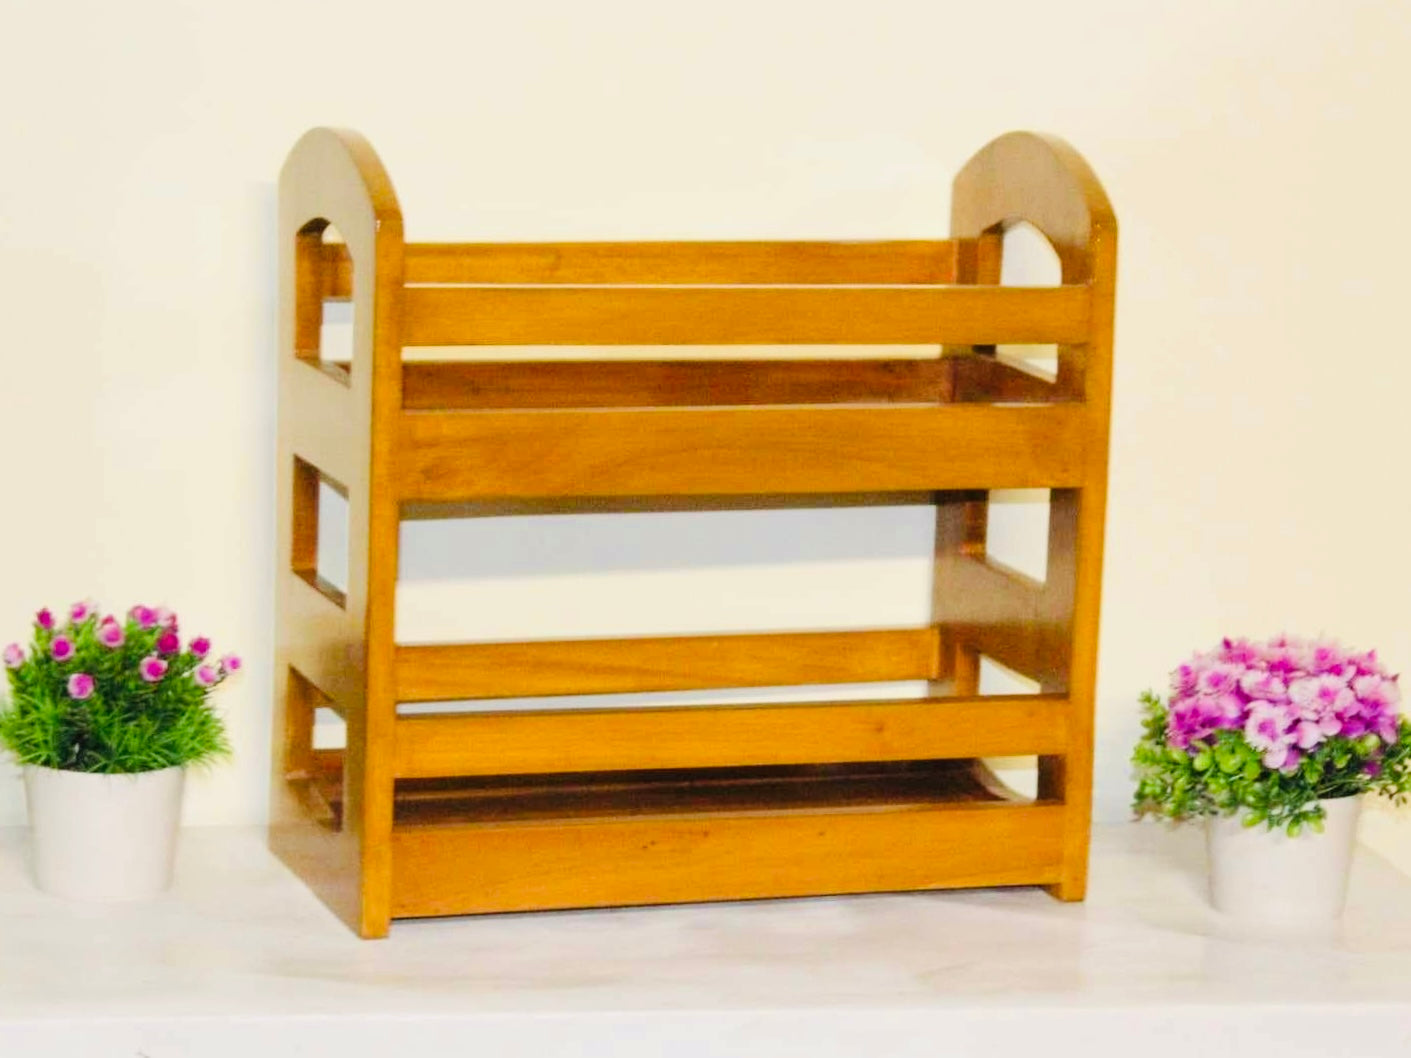 Wooden Kitchen Organizer rack